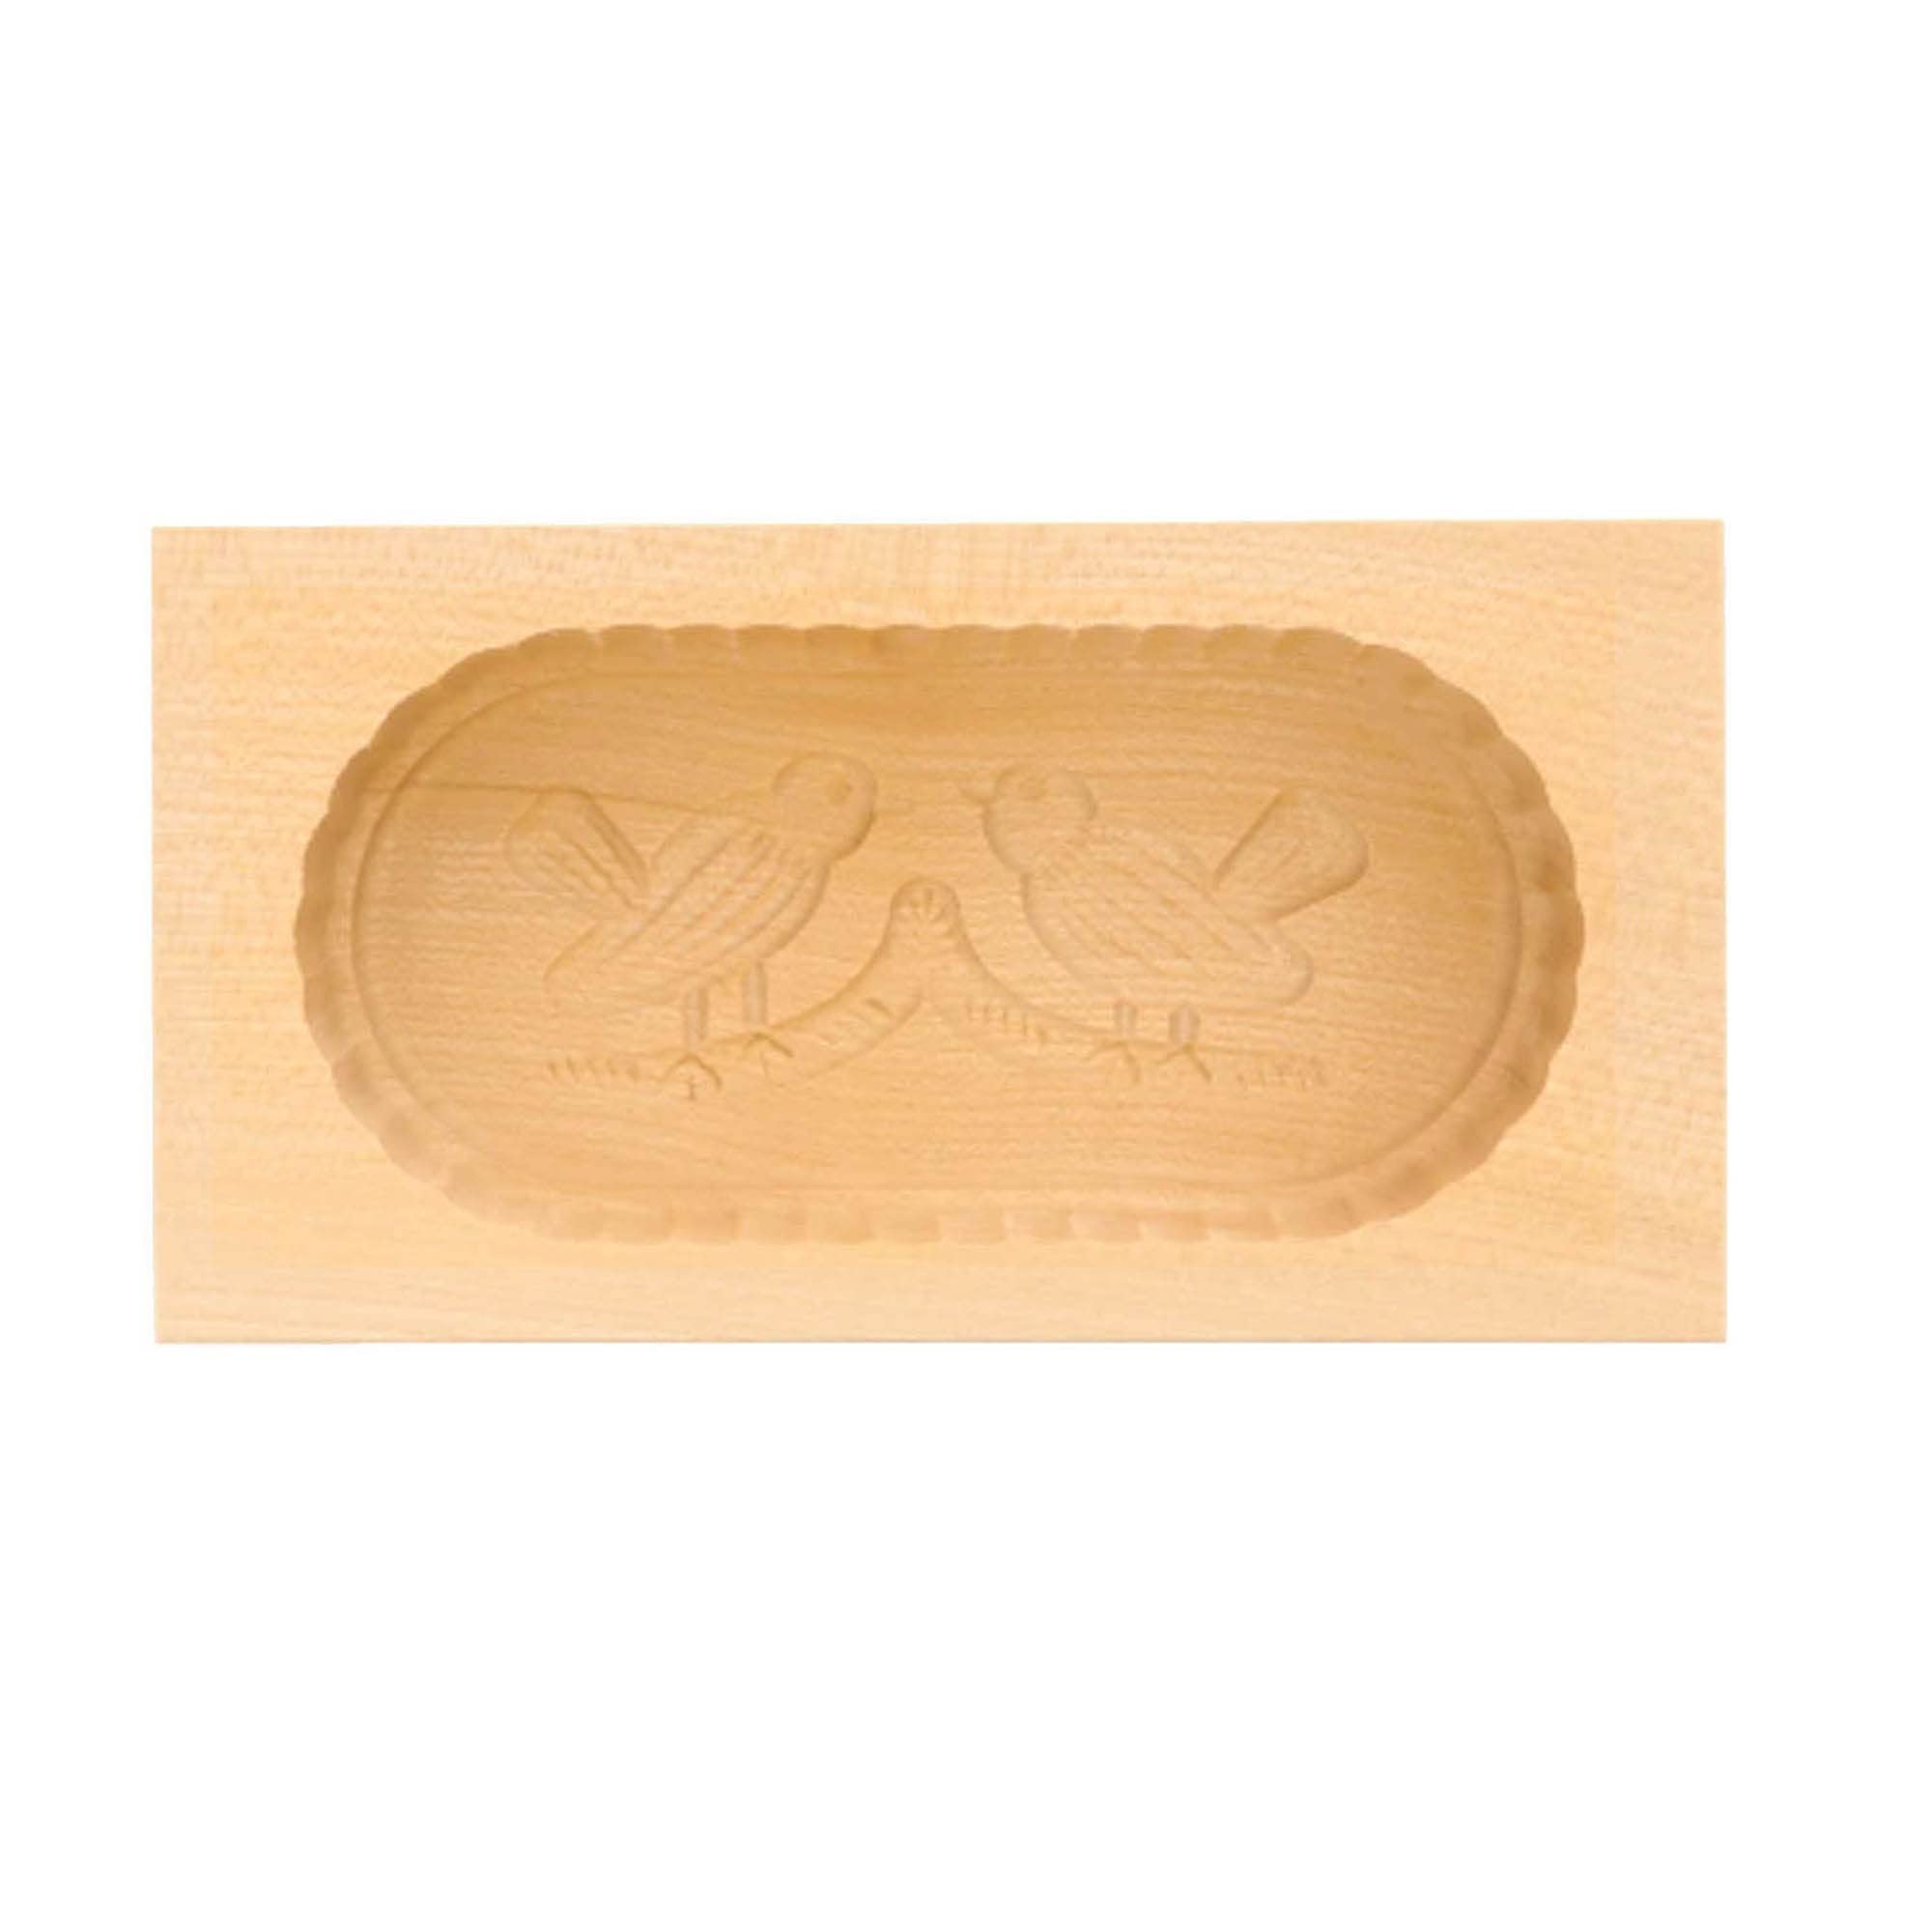 Butterform aus Holz 2 Vögel Motiv für 250g Butter, Sturz-Form zum Dekorieren, handgemacht